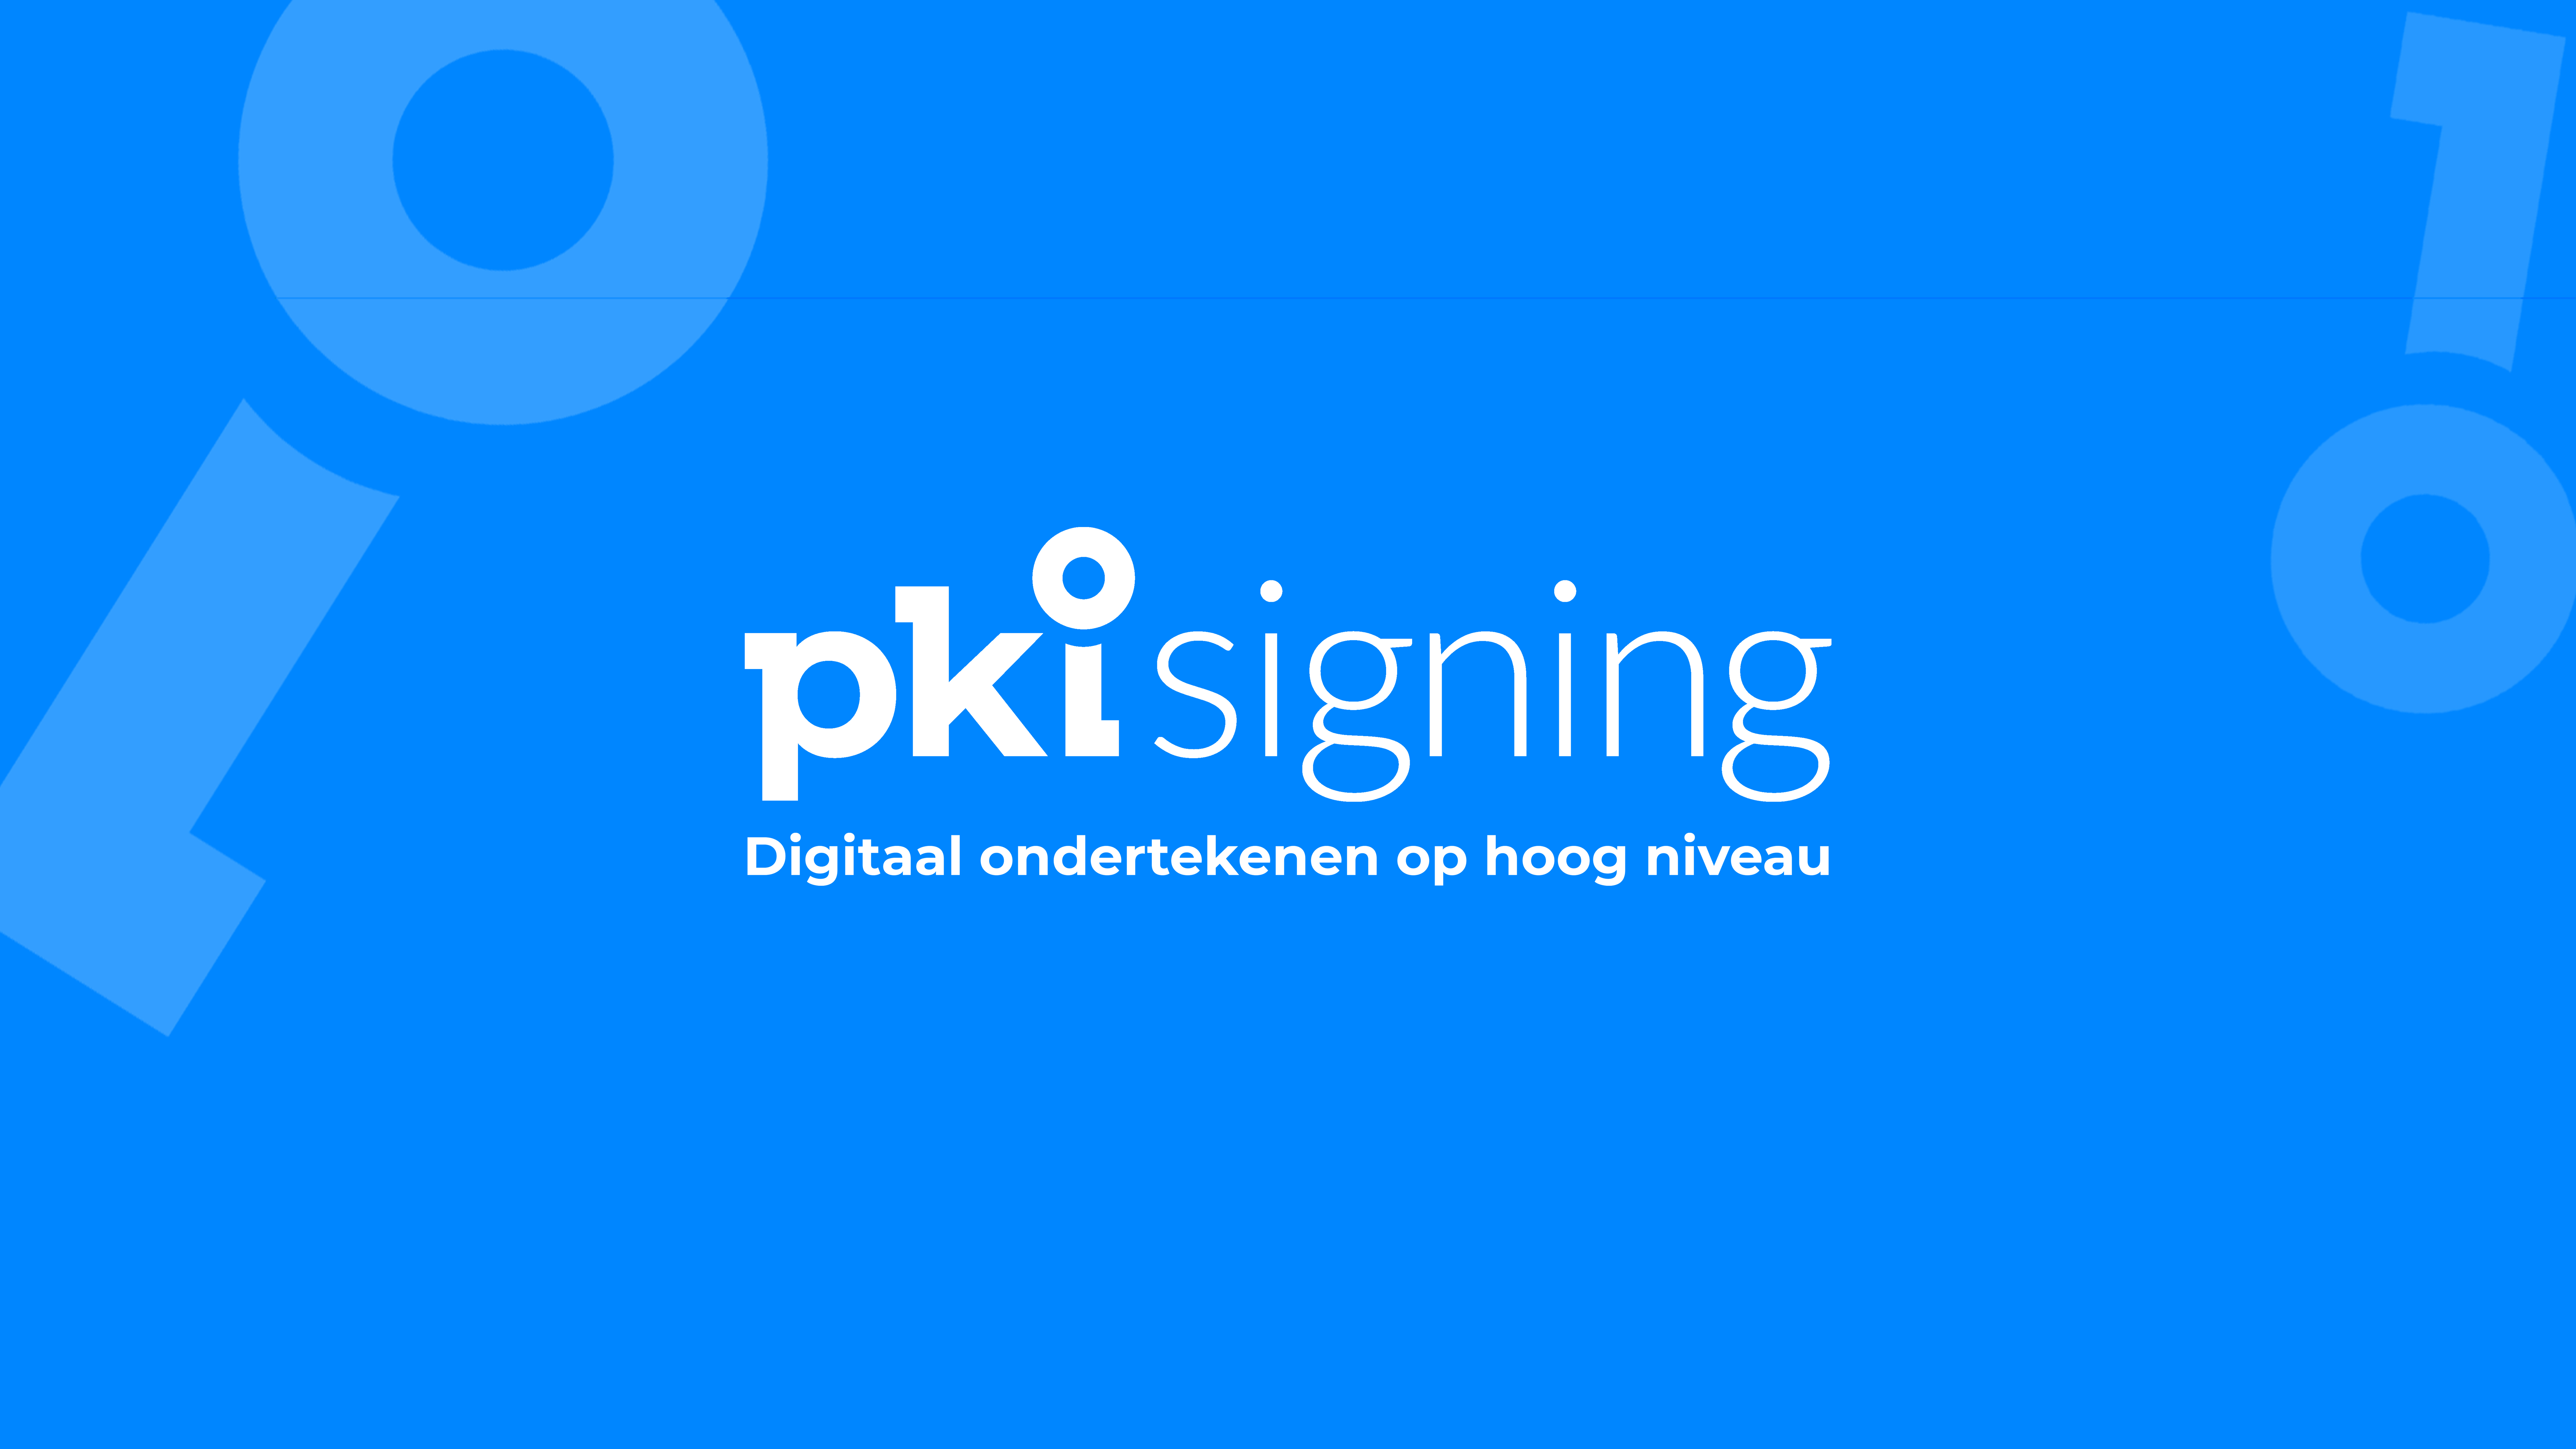 Nieuwe release PKIsigning ondertekenplatform 1.2216